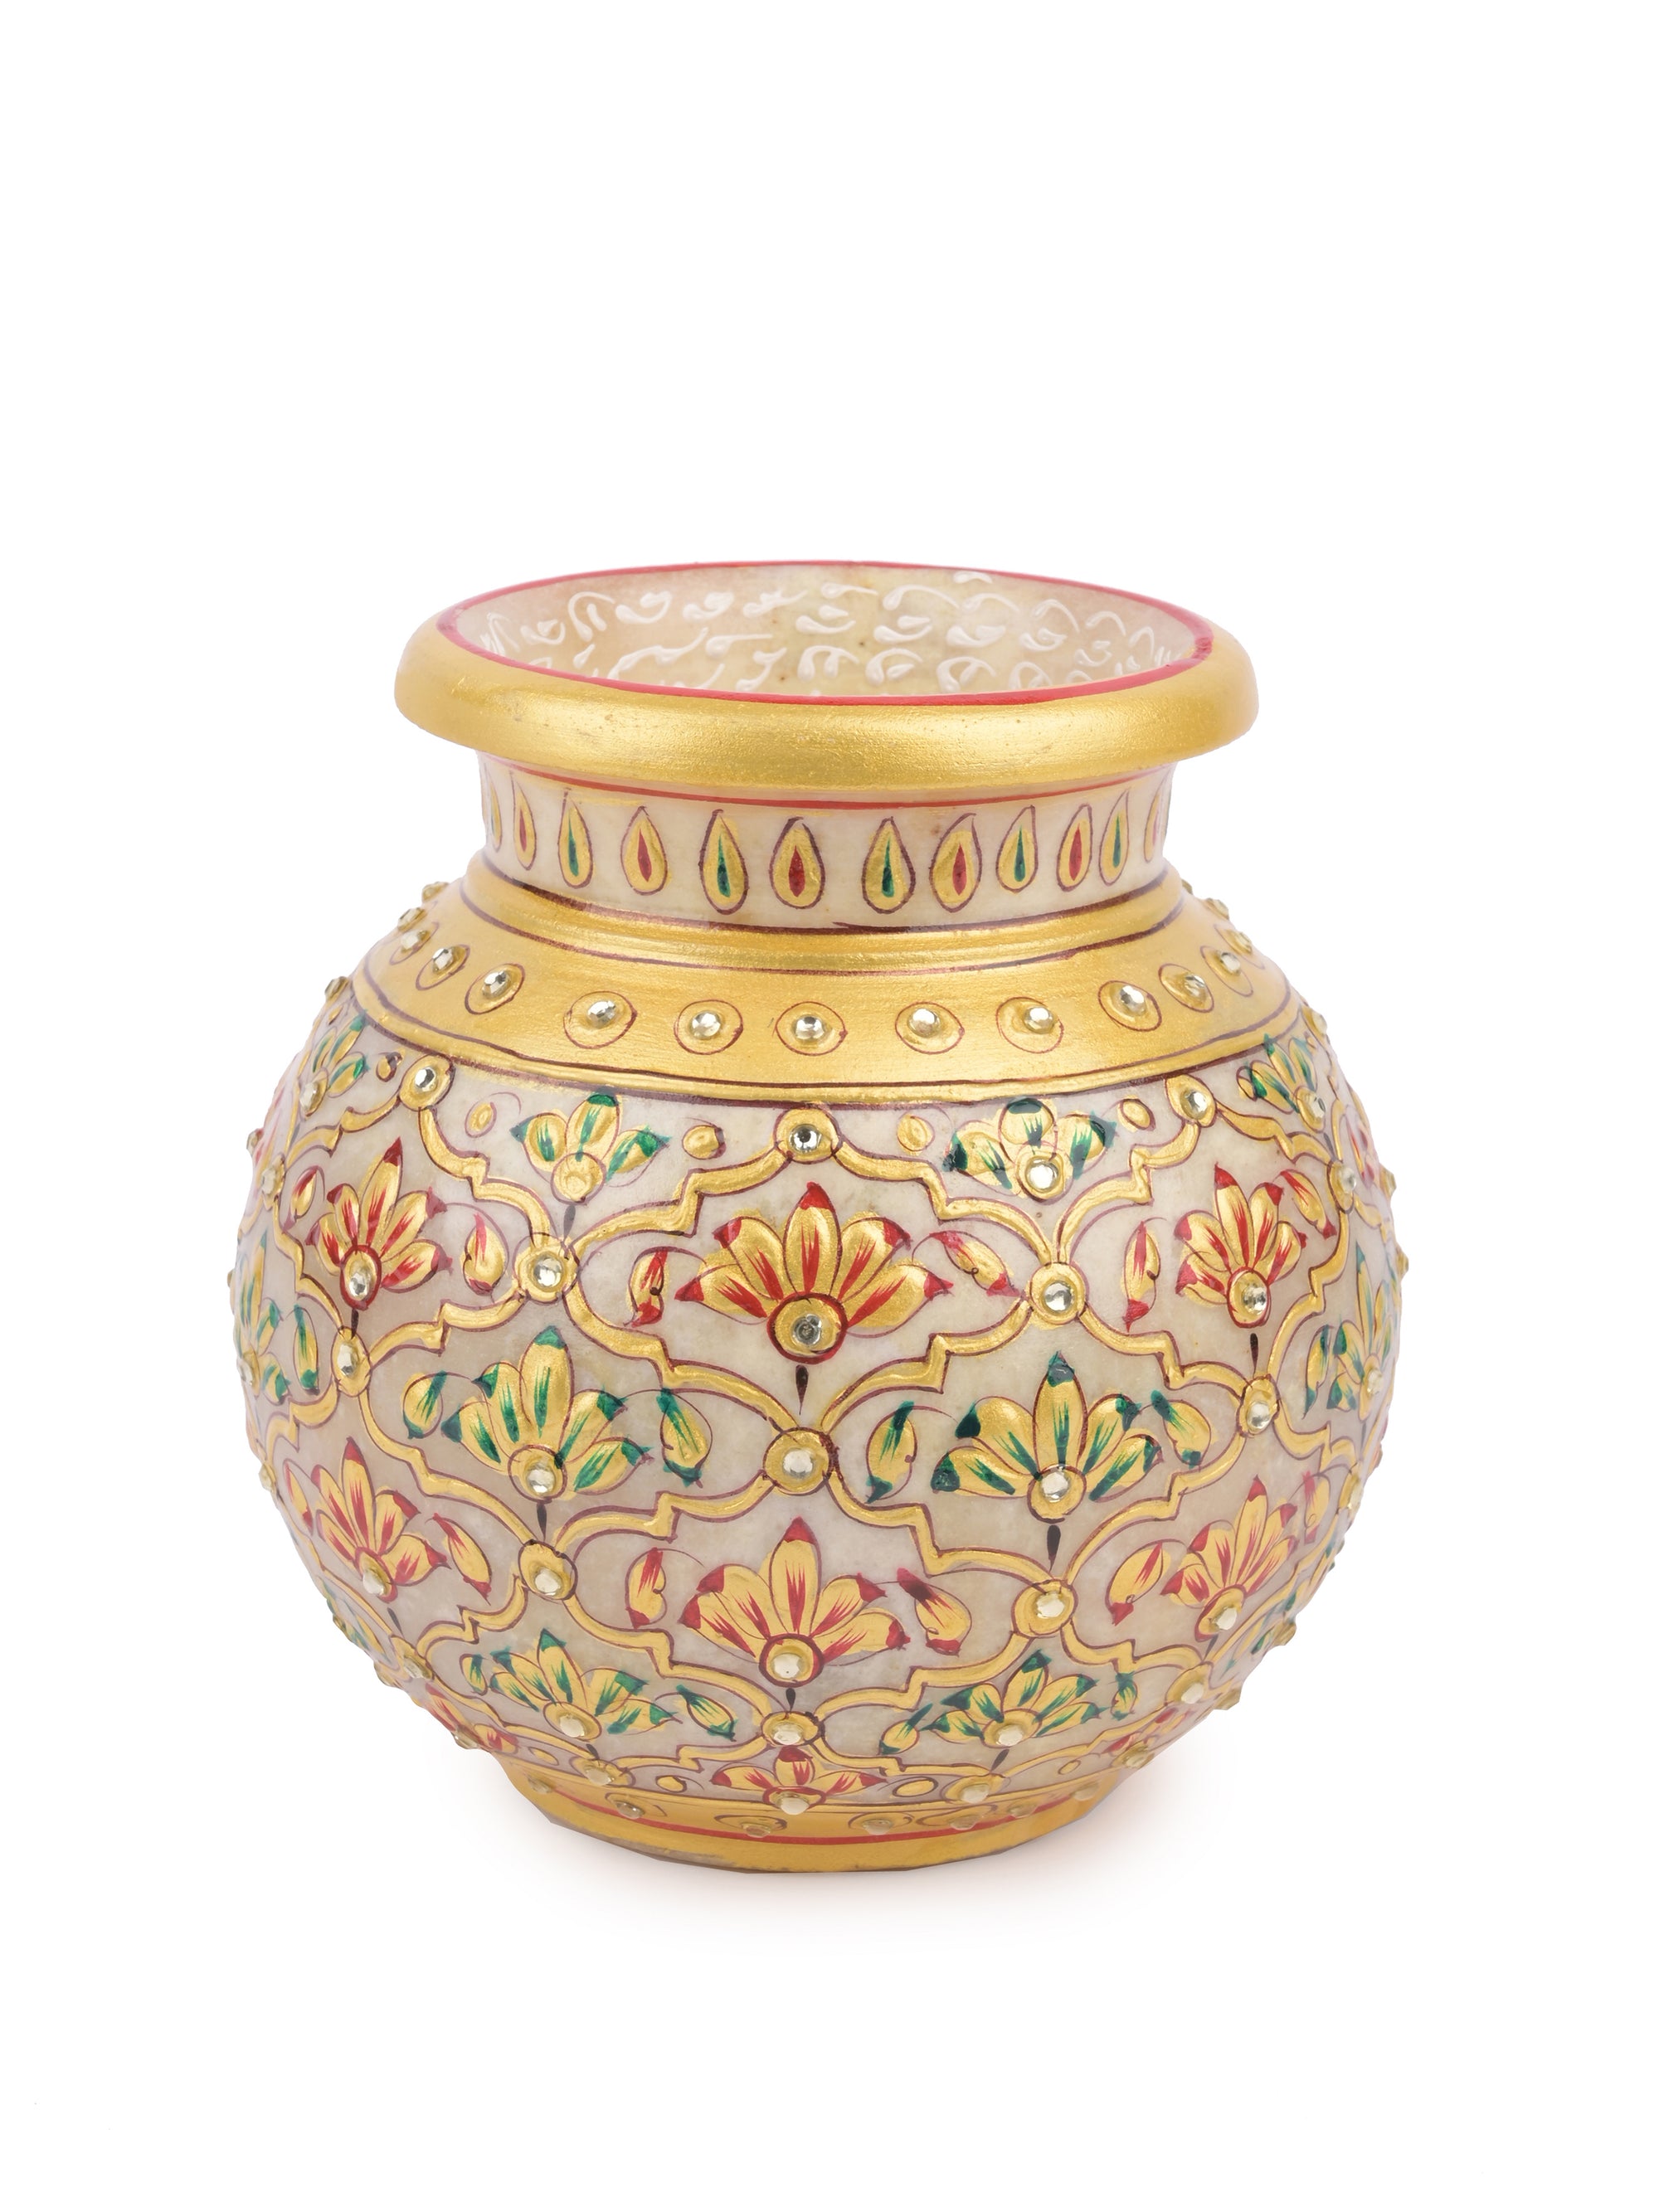 Vintage Ornate Italian Brass Pitcher Vase with Floral Design